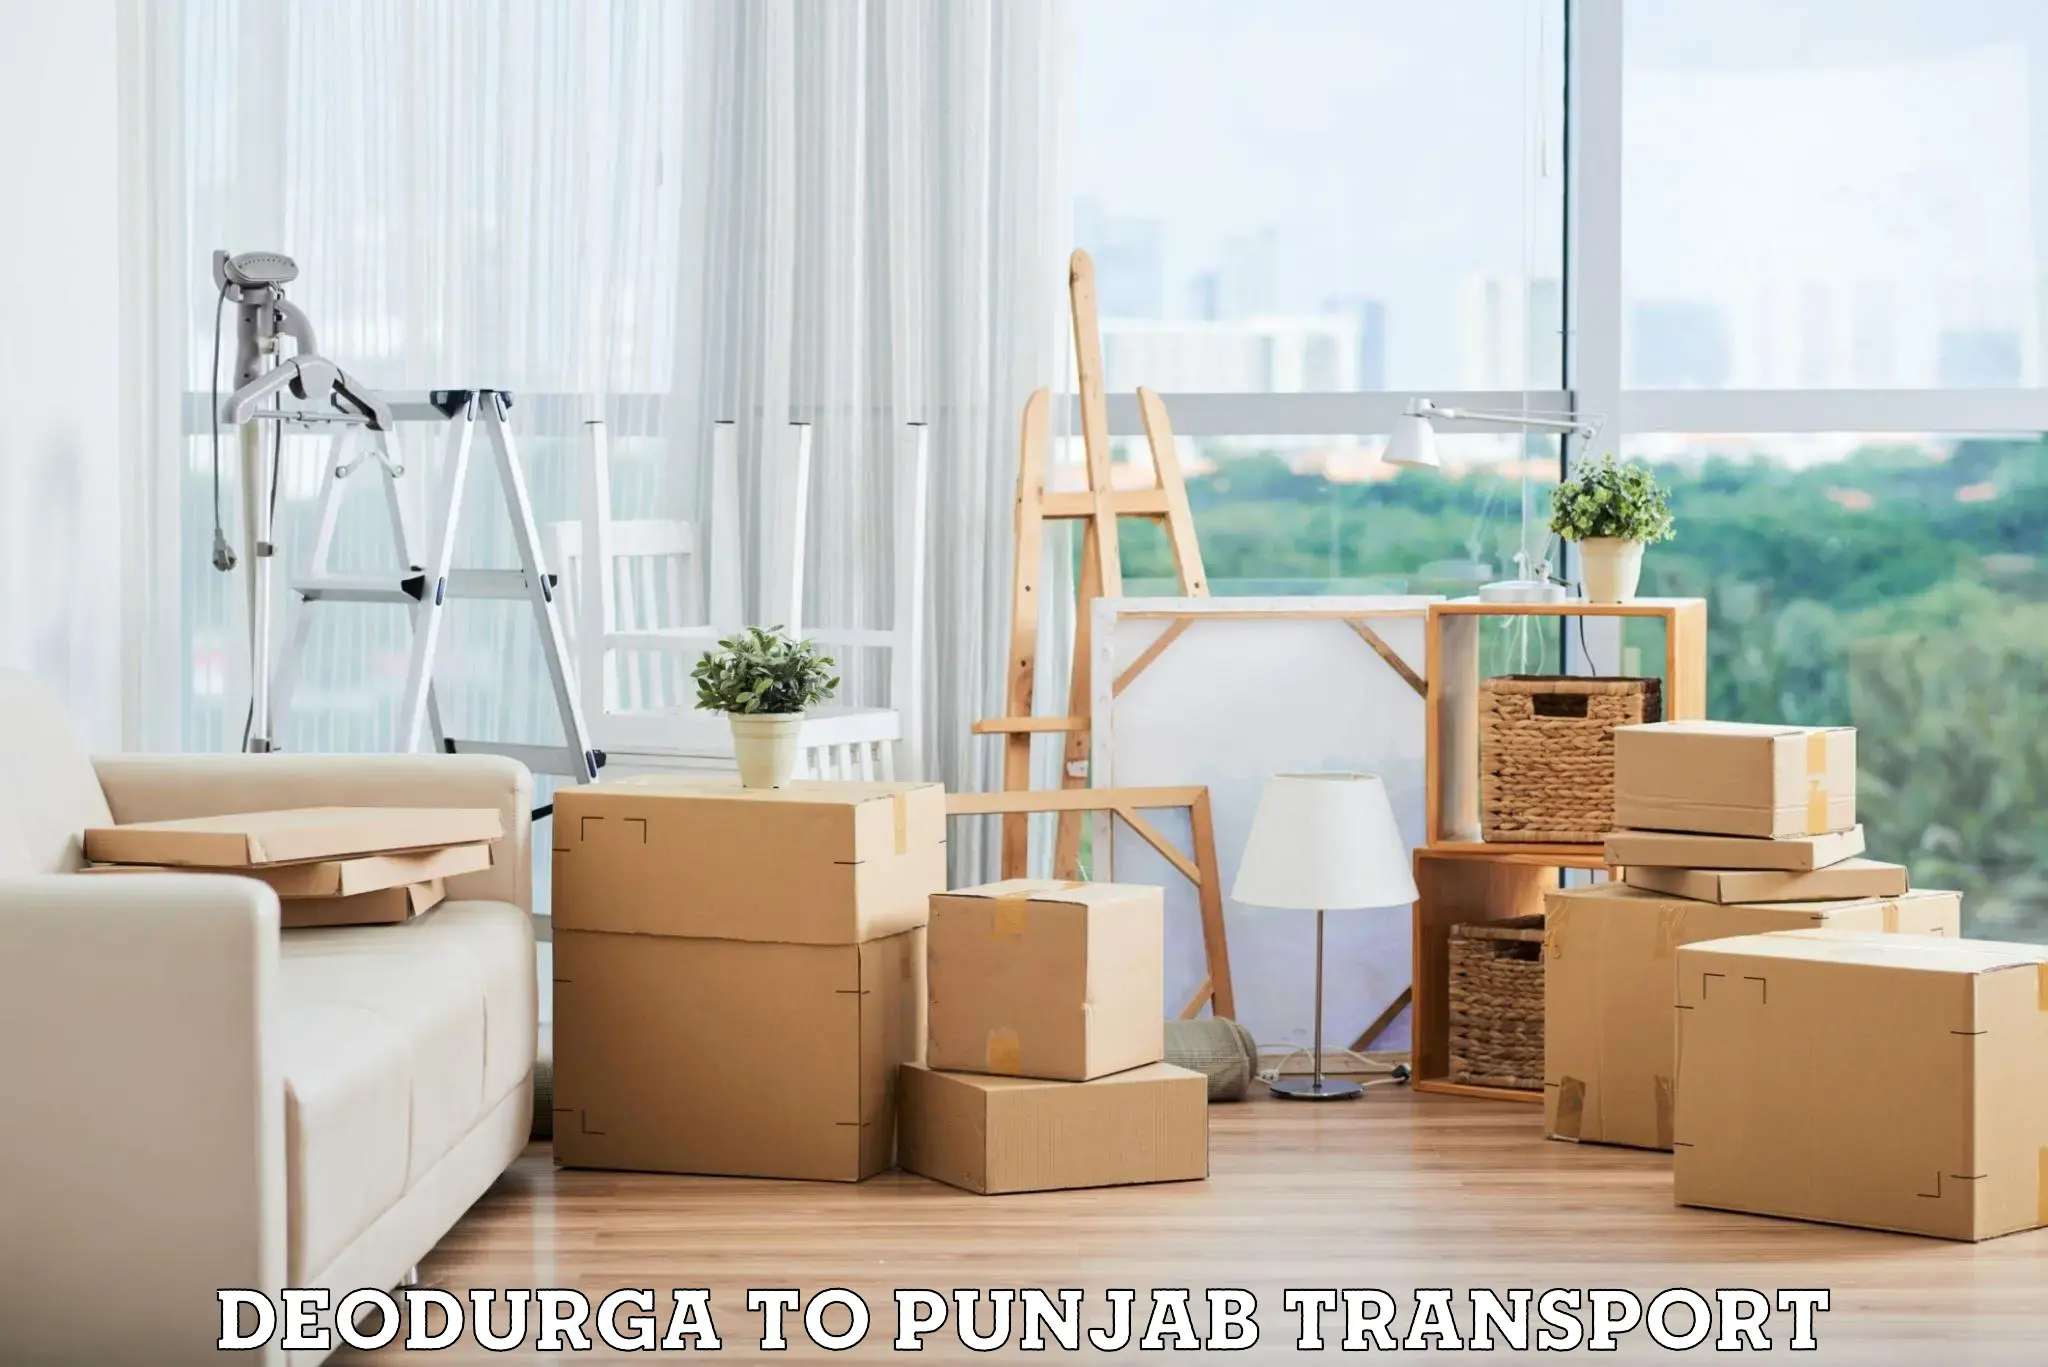 Furniture transport service Deodurga to Jalandhar